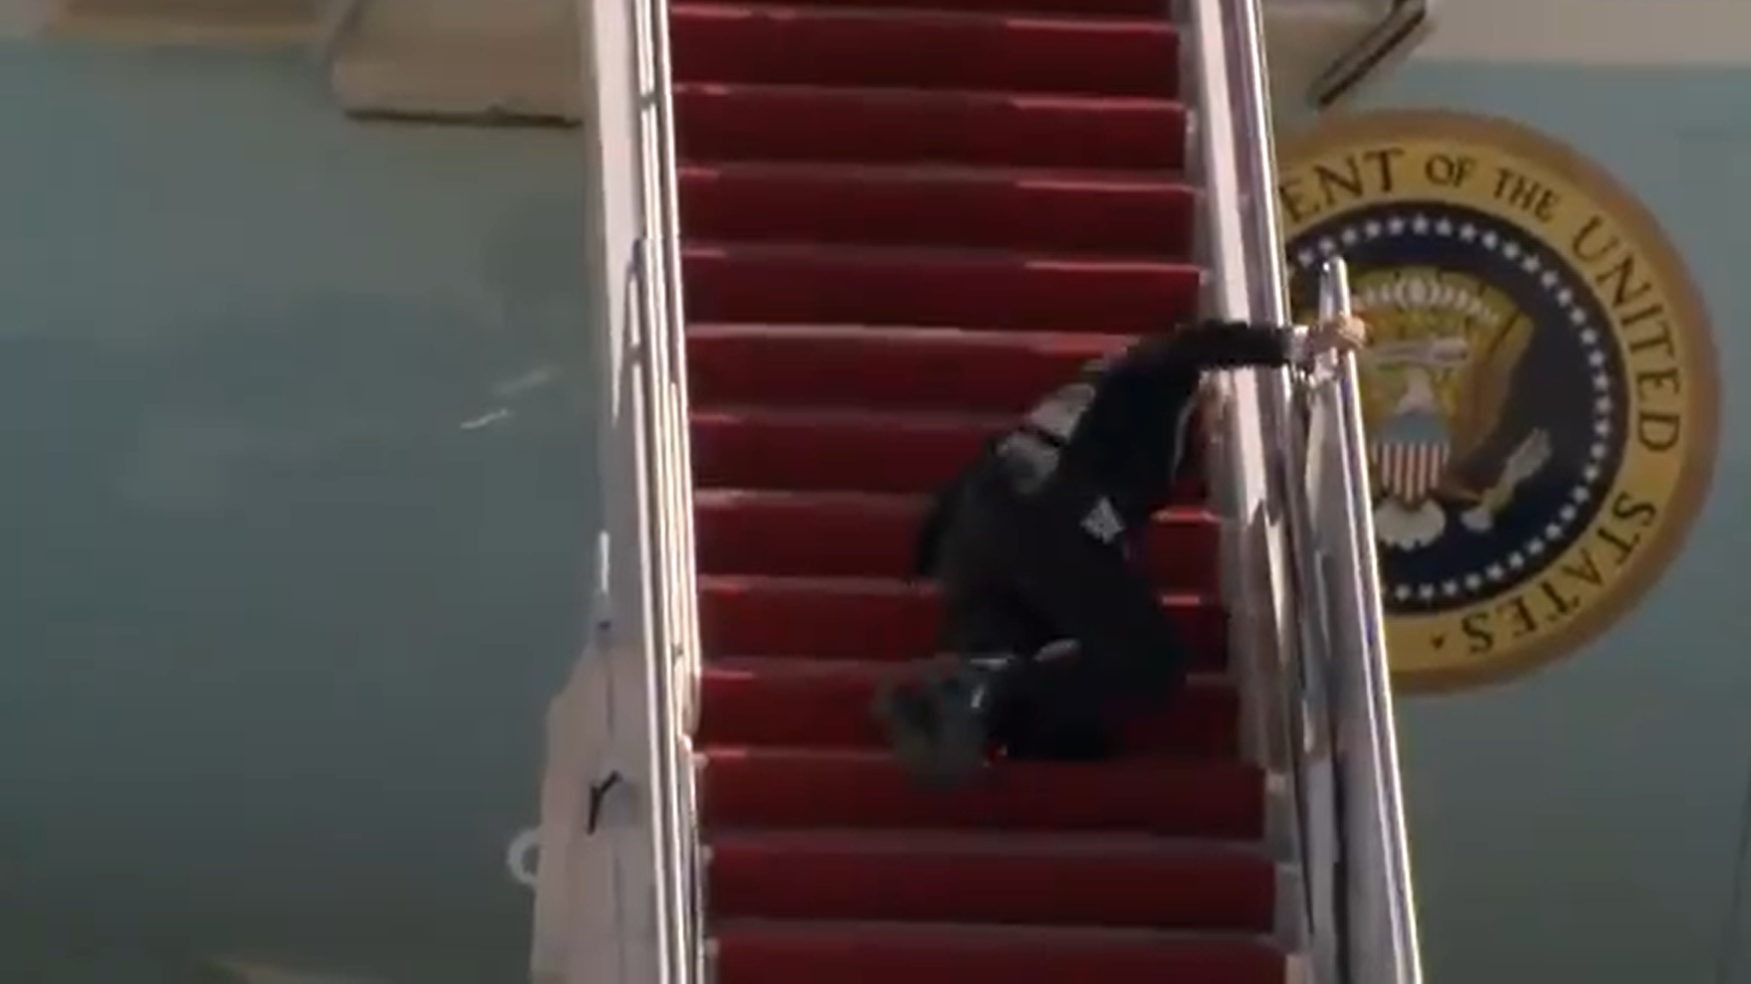 Joe Biden upada na schodach.